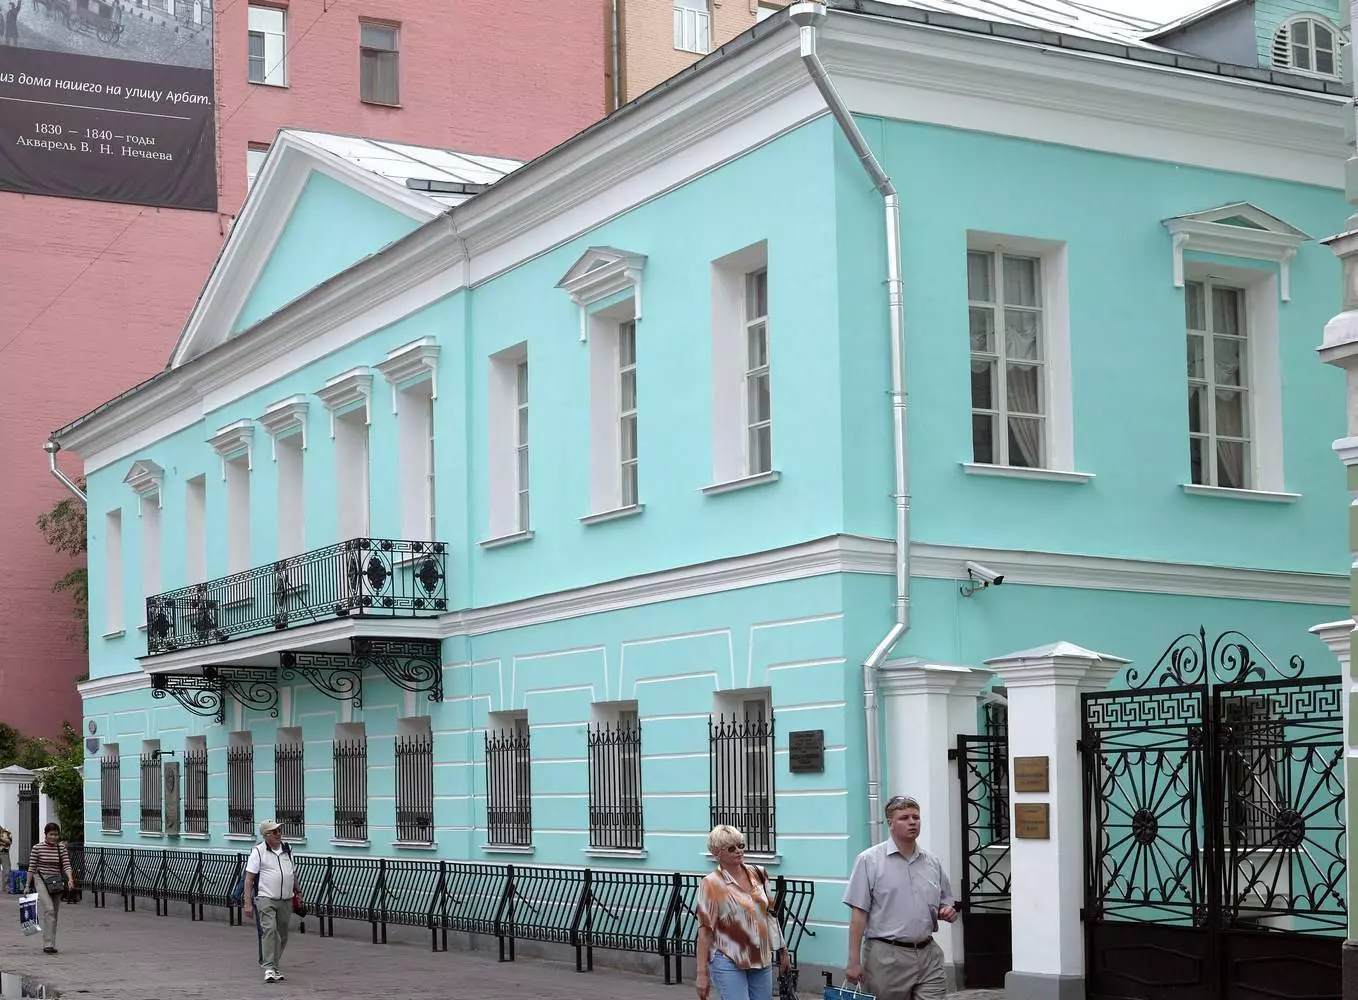 Музей-квартира пушкина 2019 ✮ старинные русские интерьеры